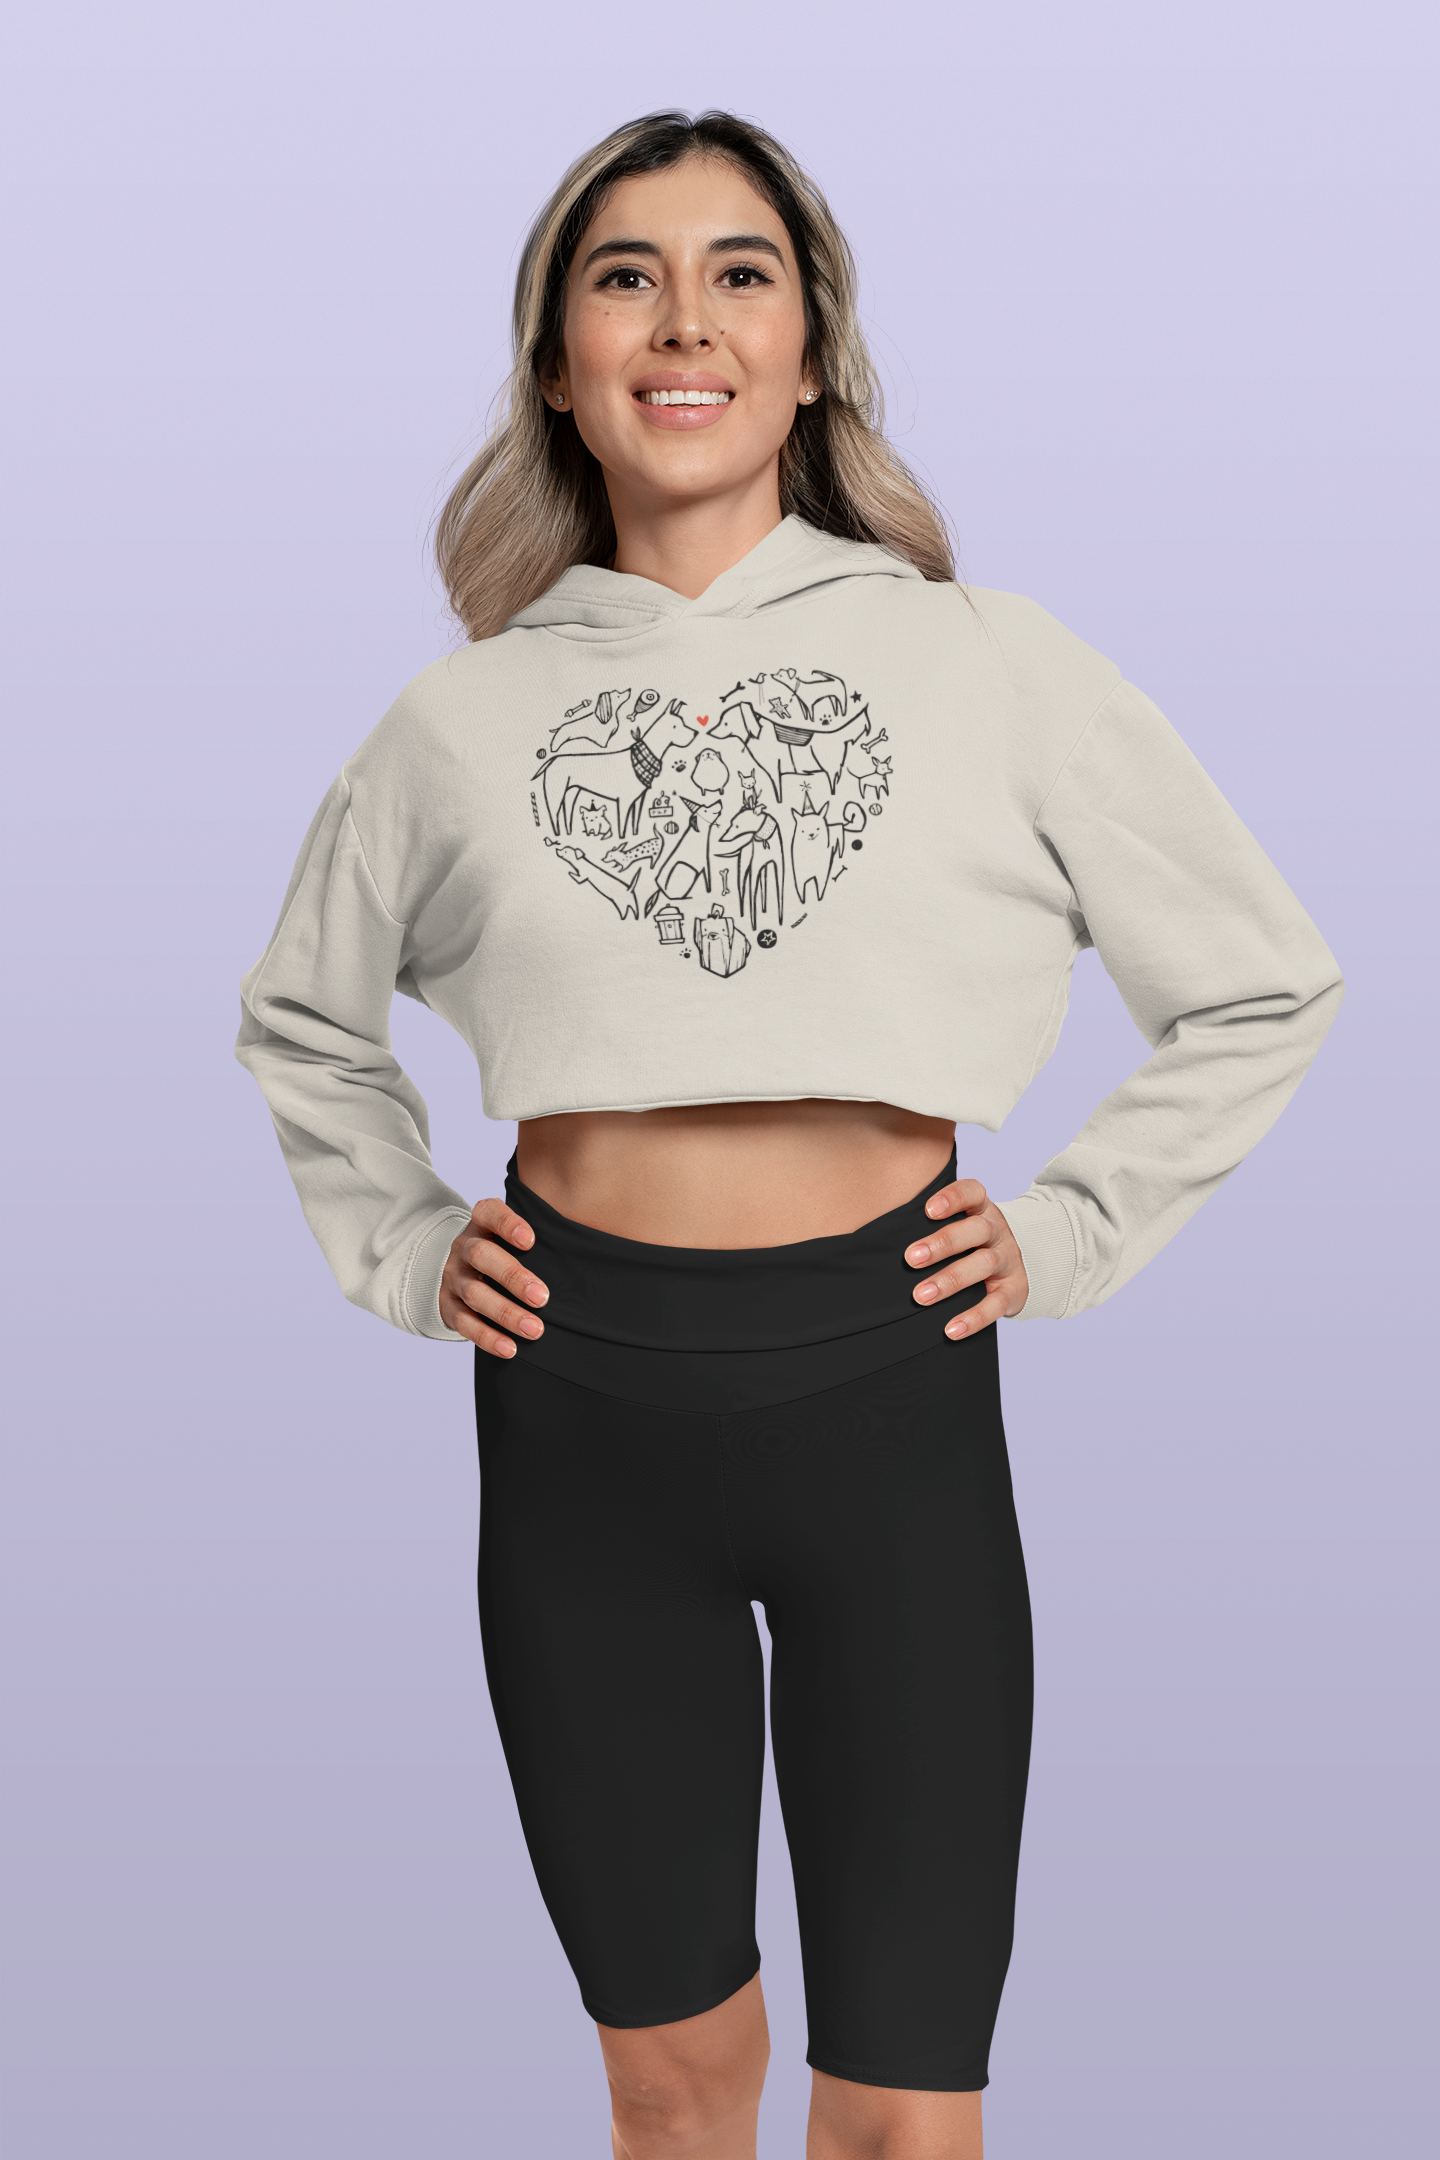 Dog Heart Women’s Cropped Hooded Sweatshirt